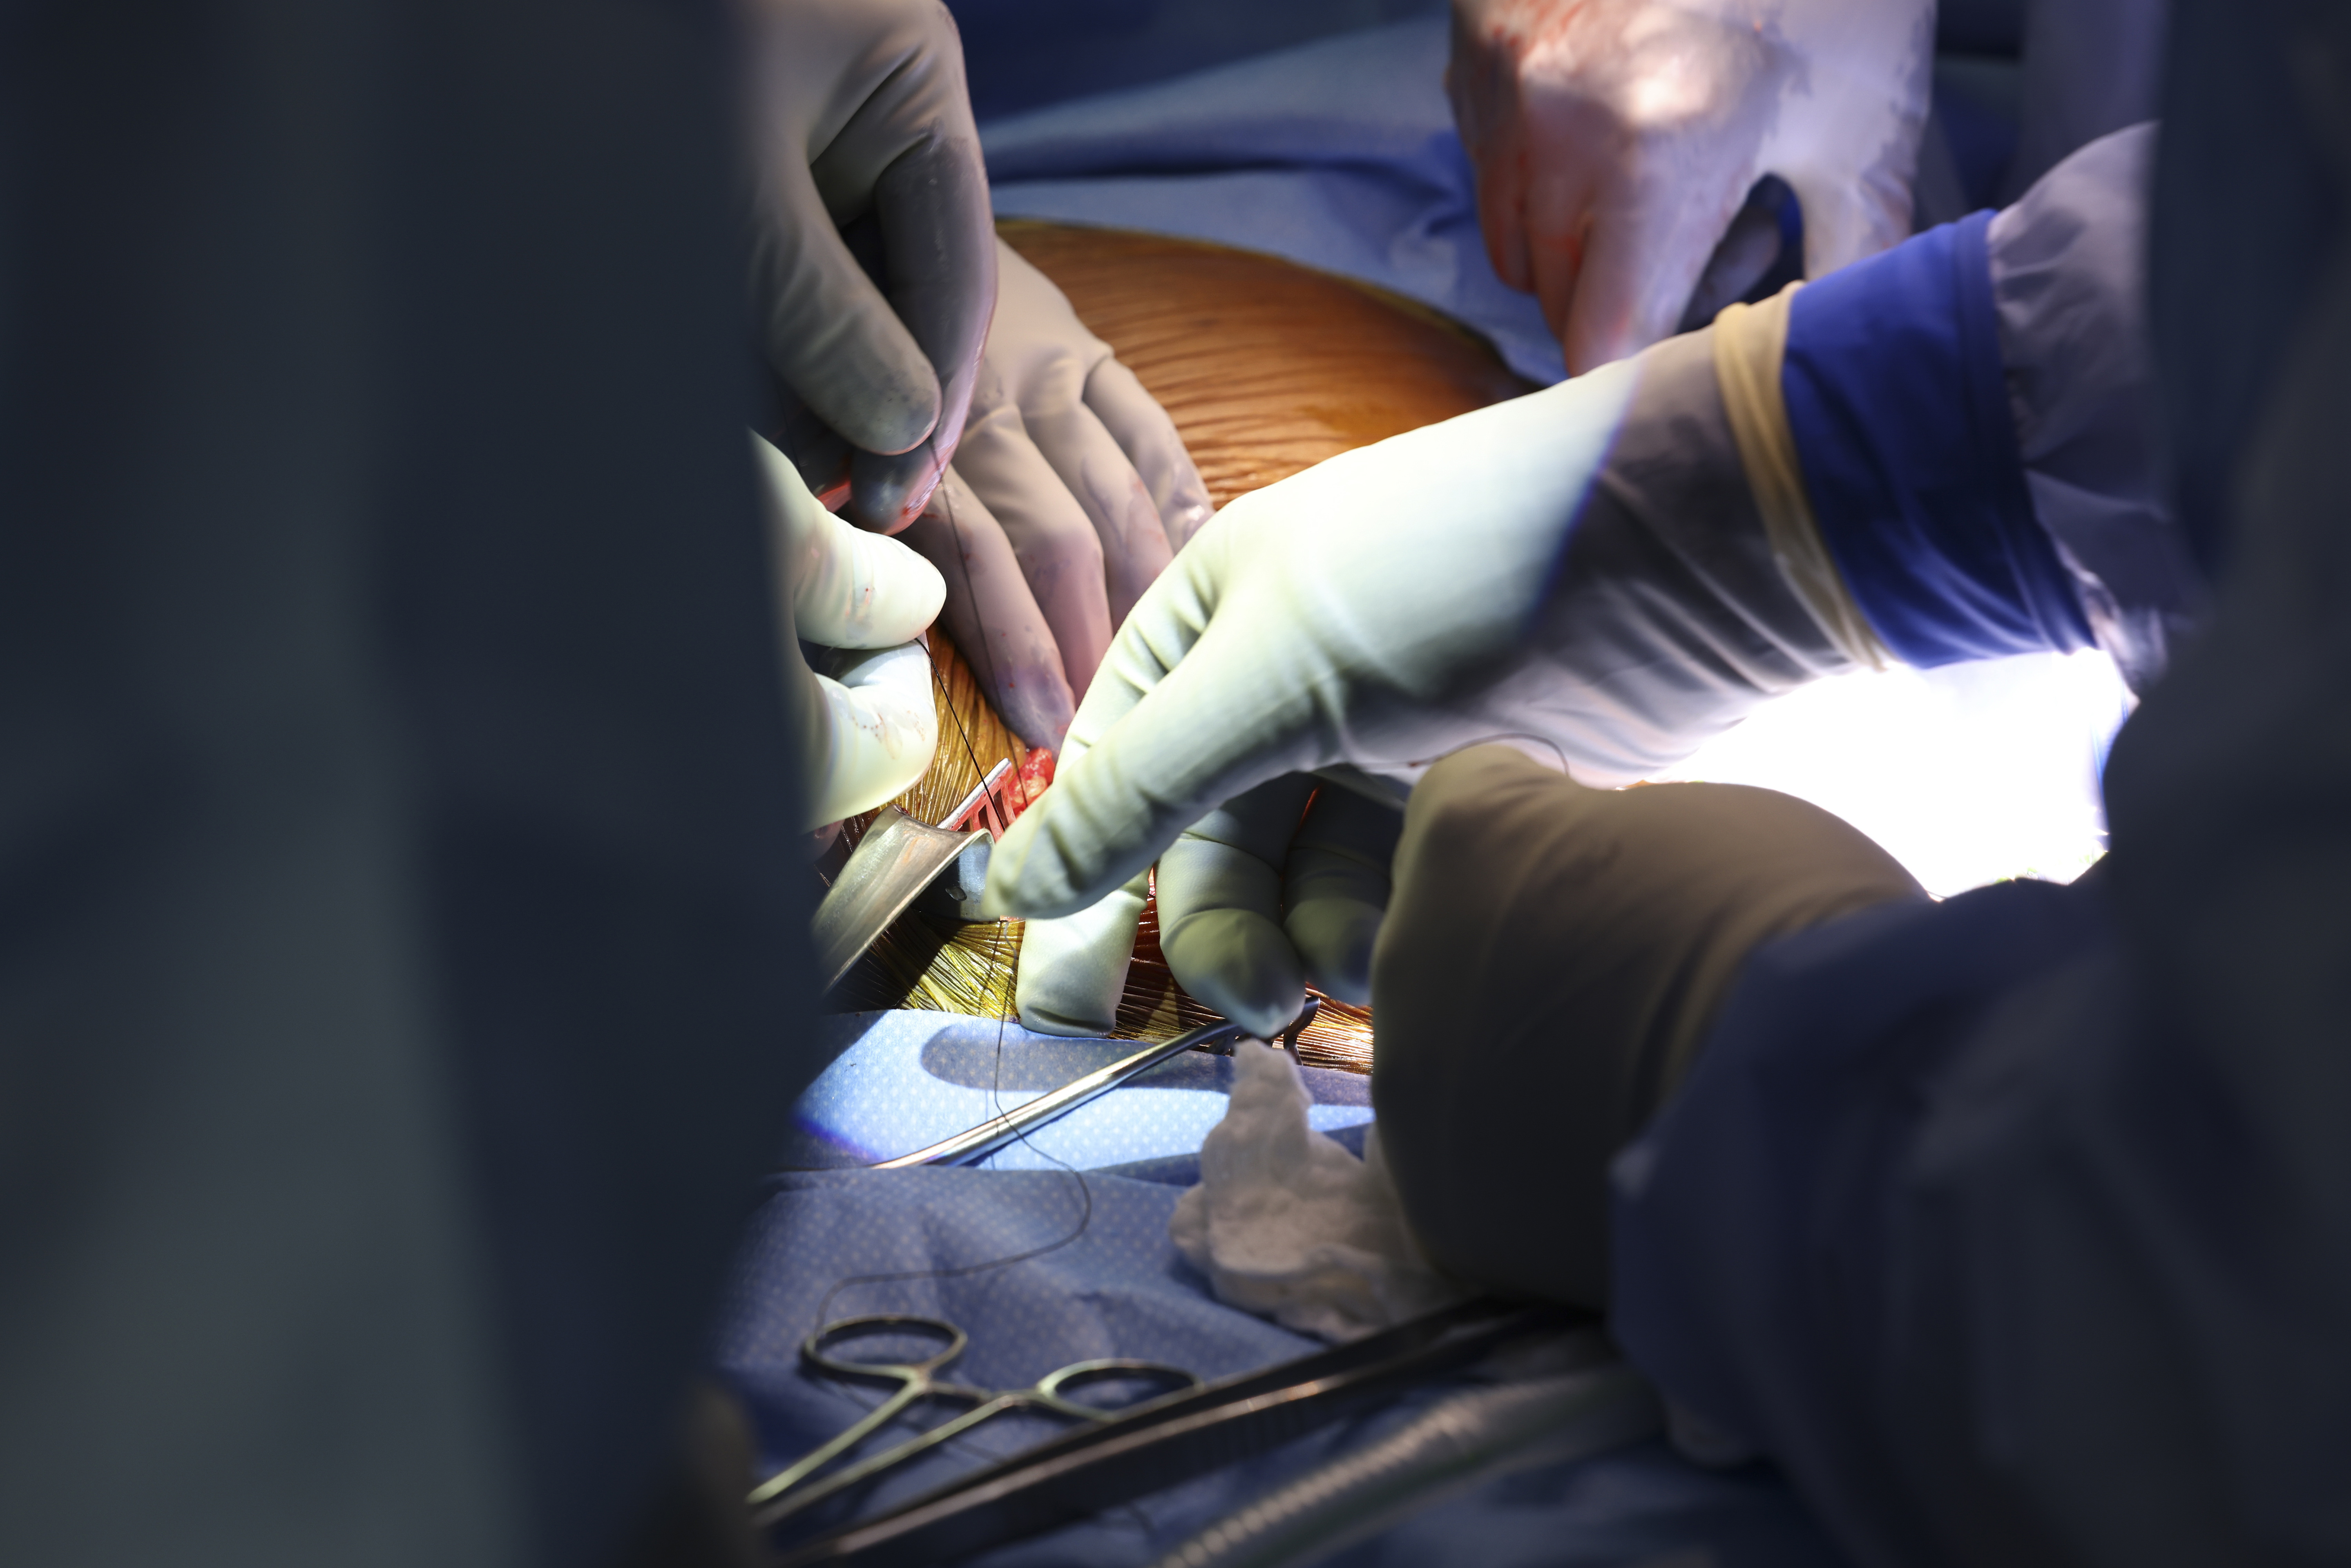 Chirurgen sagten, der Eingriff sei ein Erfolg gewesen und könne Hoffnung für andere Patienten mit Nierenerkrankungen geben